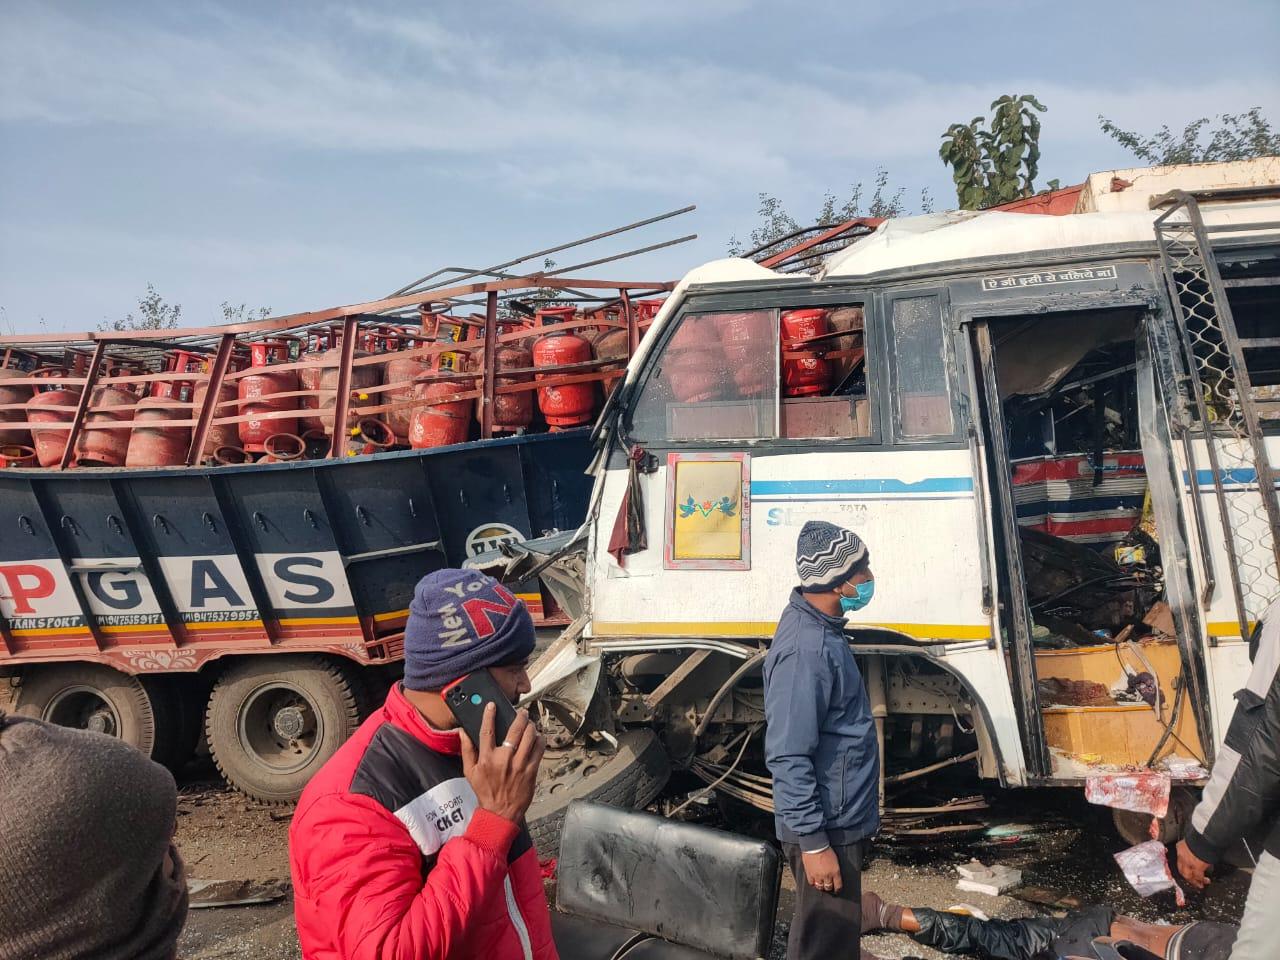 Big News: LPG सिलेंडर से लदे ट्रक ने बस को मारी टक्कर, छह की मौत, 25 से अधिक लोग घायल, CM ने जताया शोक